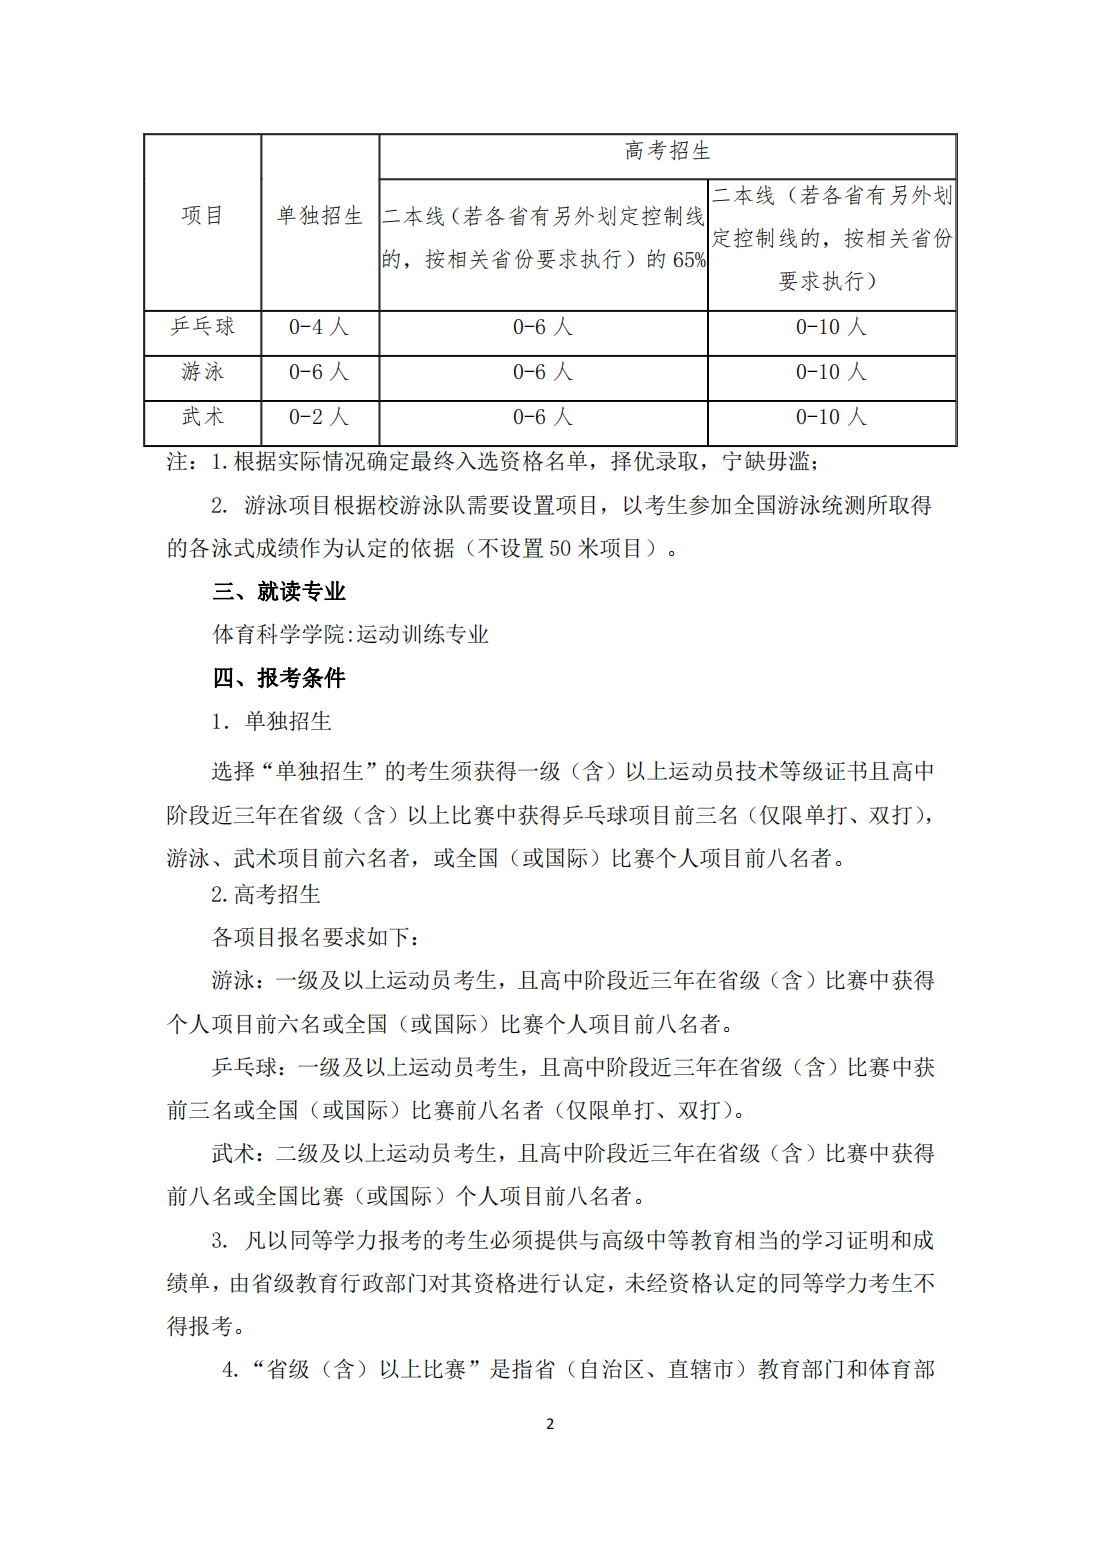 华南师范大学 2023 年高水平运动队招生简章